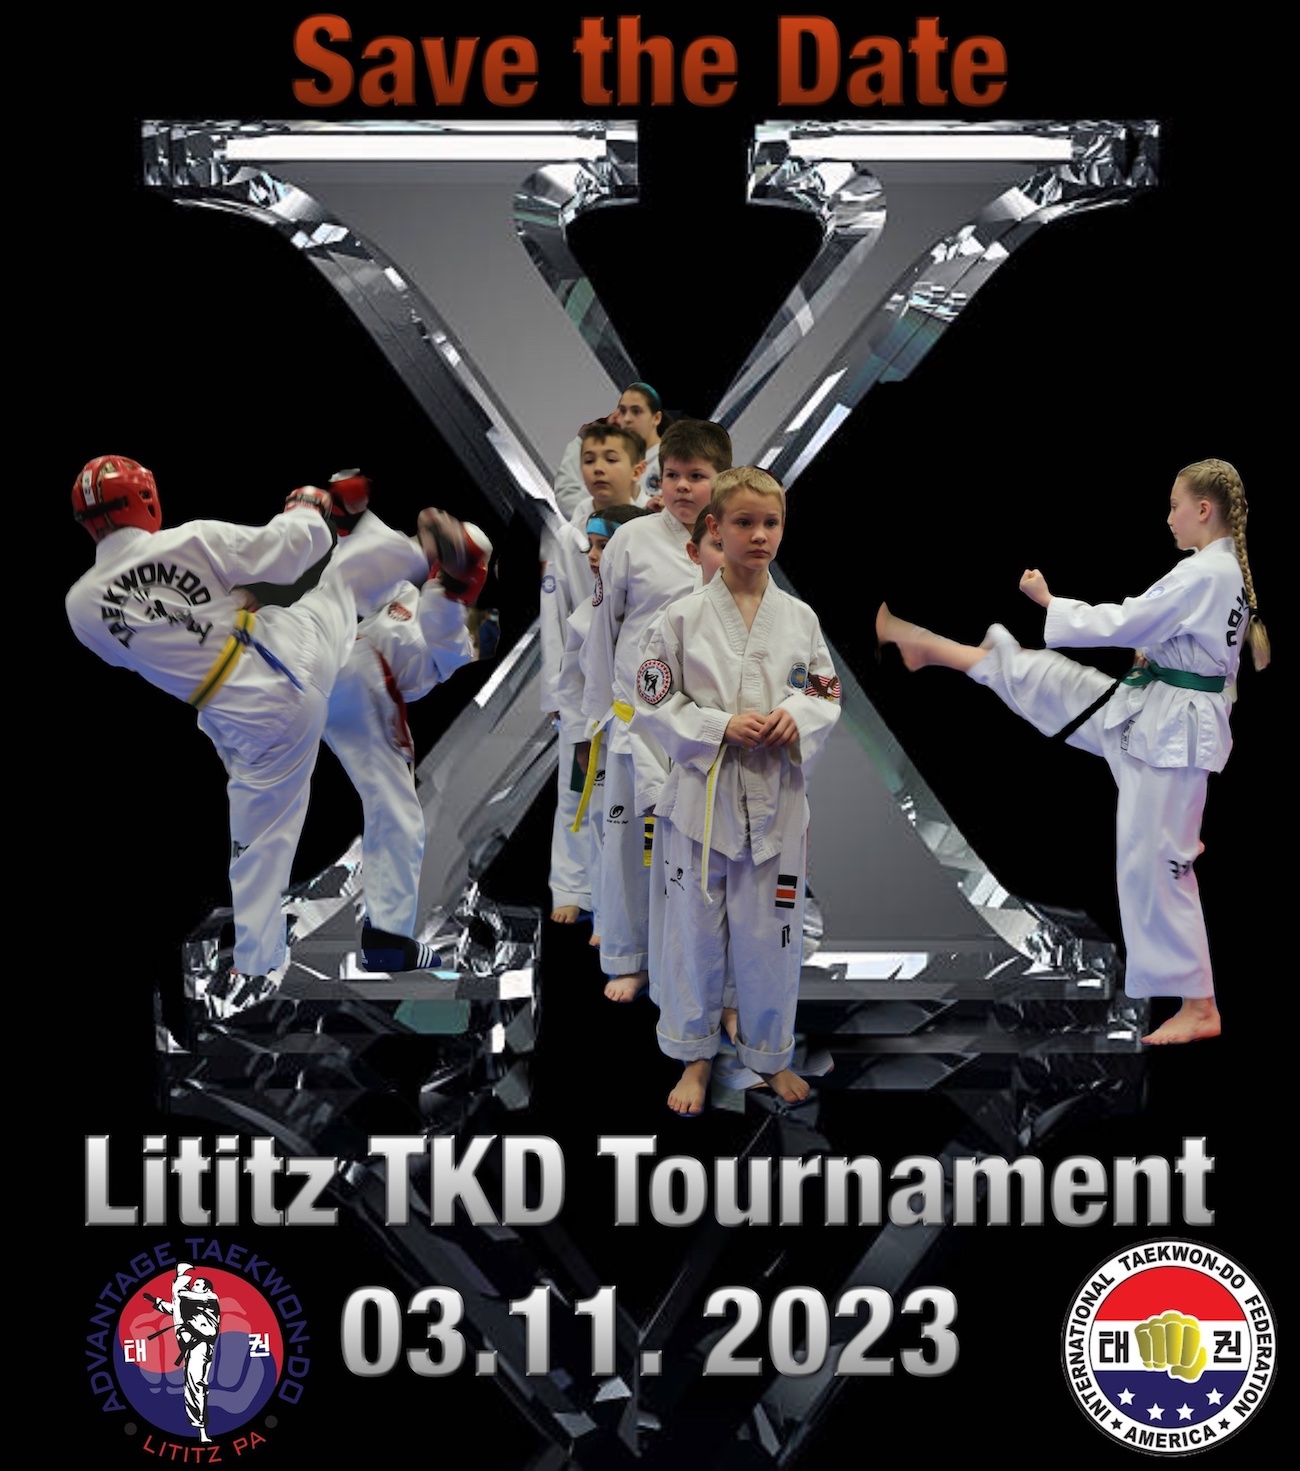 10th Lititz TKD Tournament